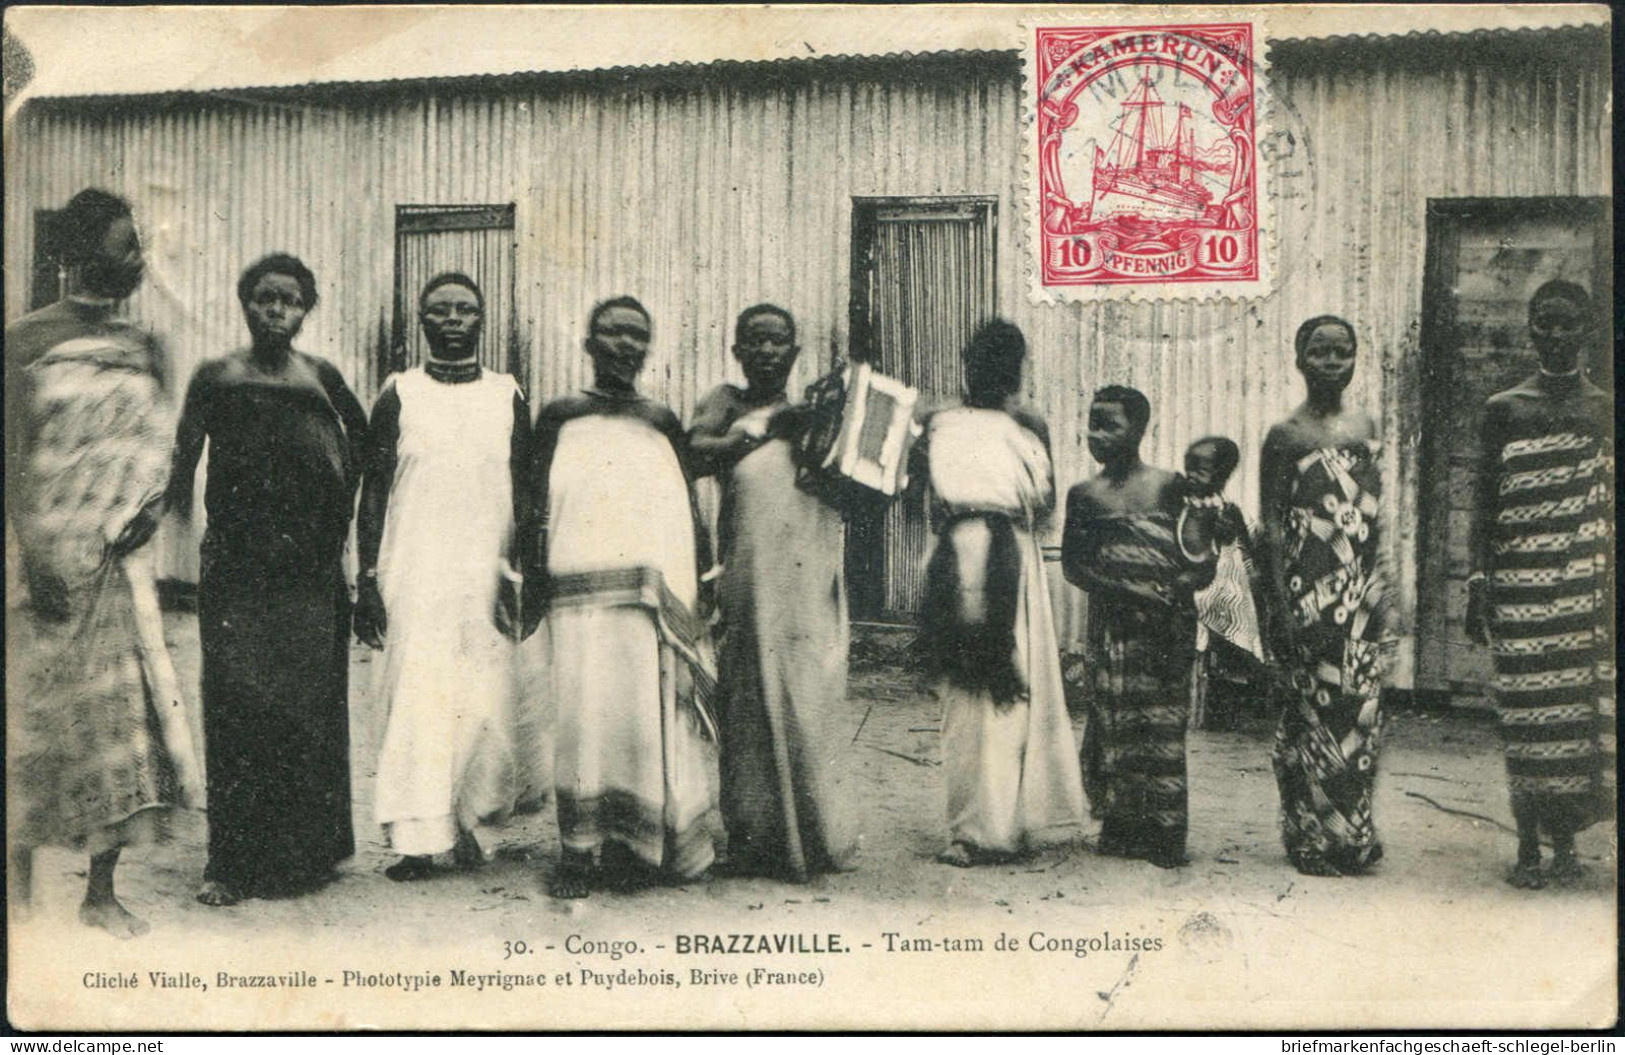 Deutsche Kolonien Kamerun, Brief - Kamerun